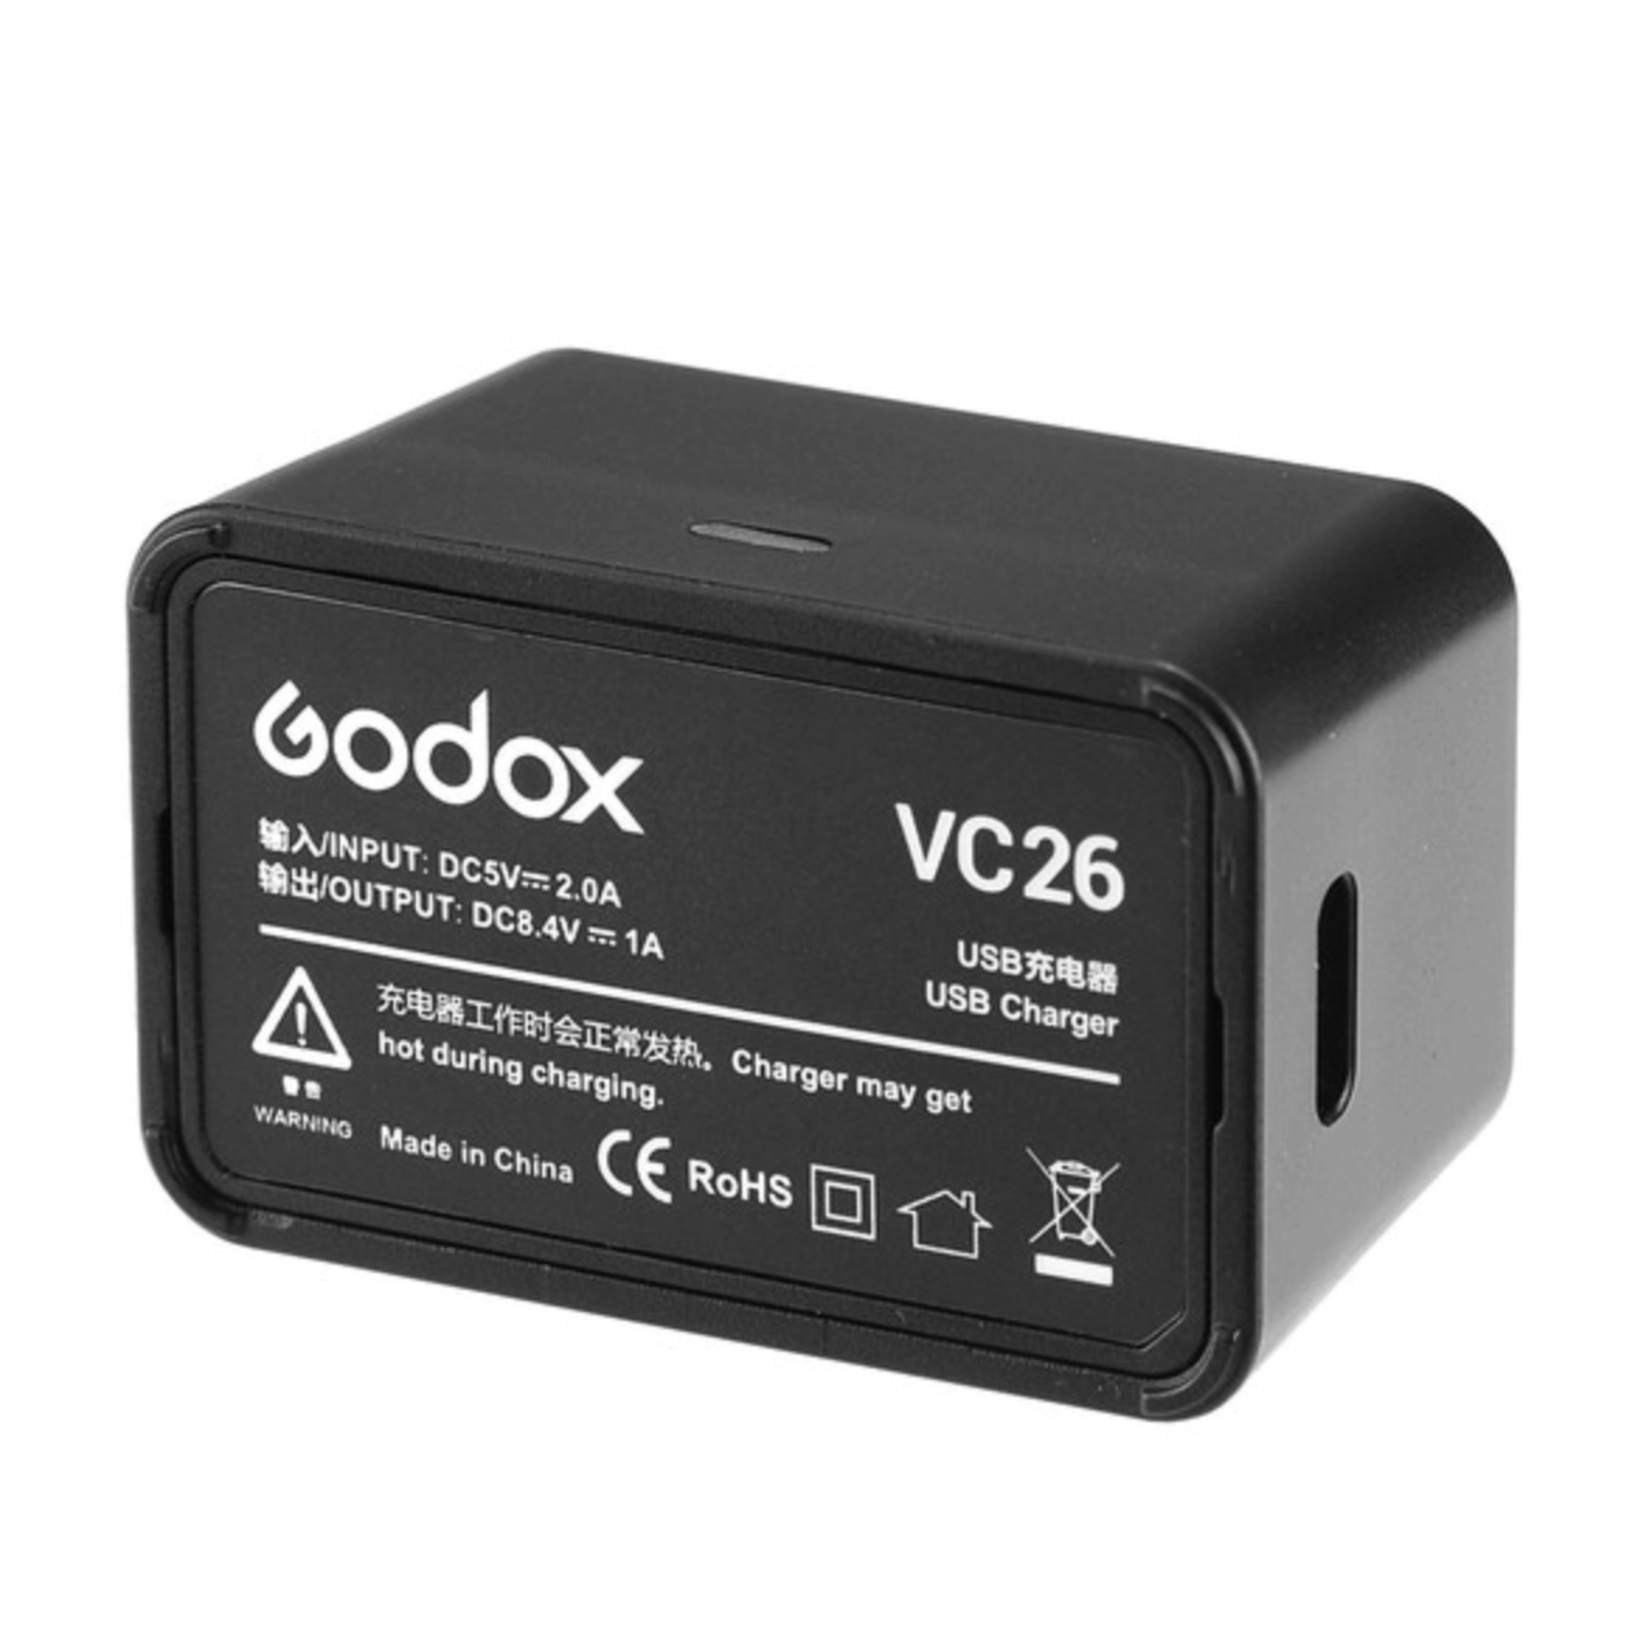 Godox Godox VC26 USB Charger for V1 & V860III Battery